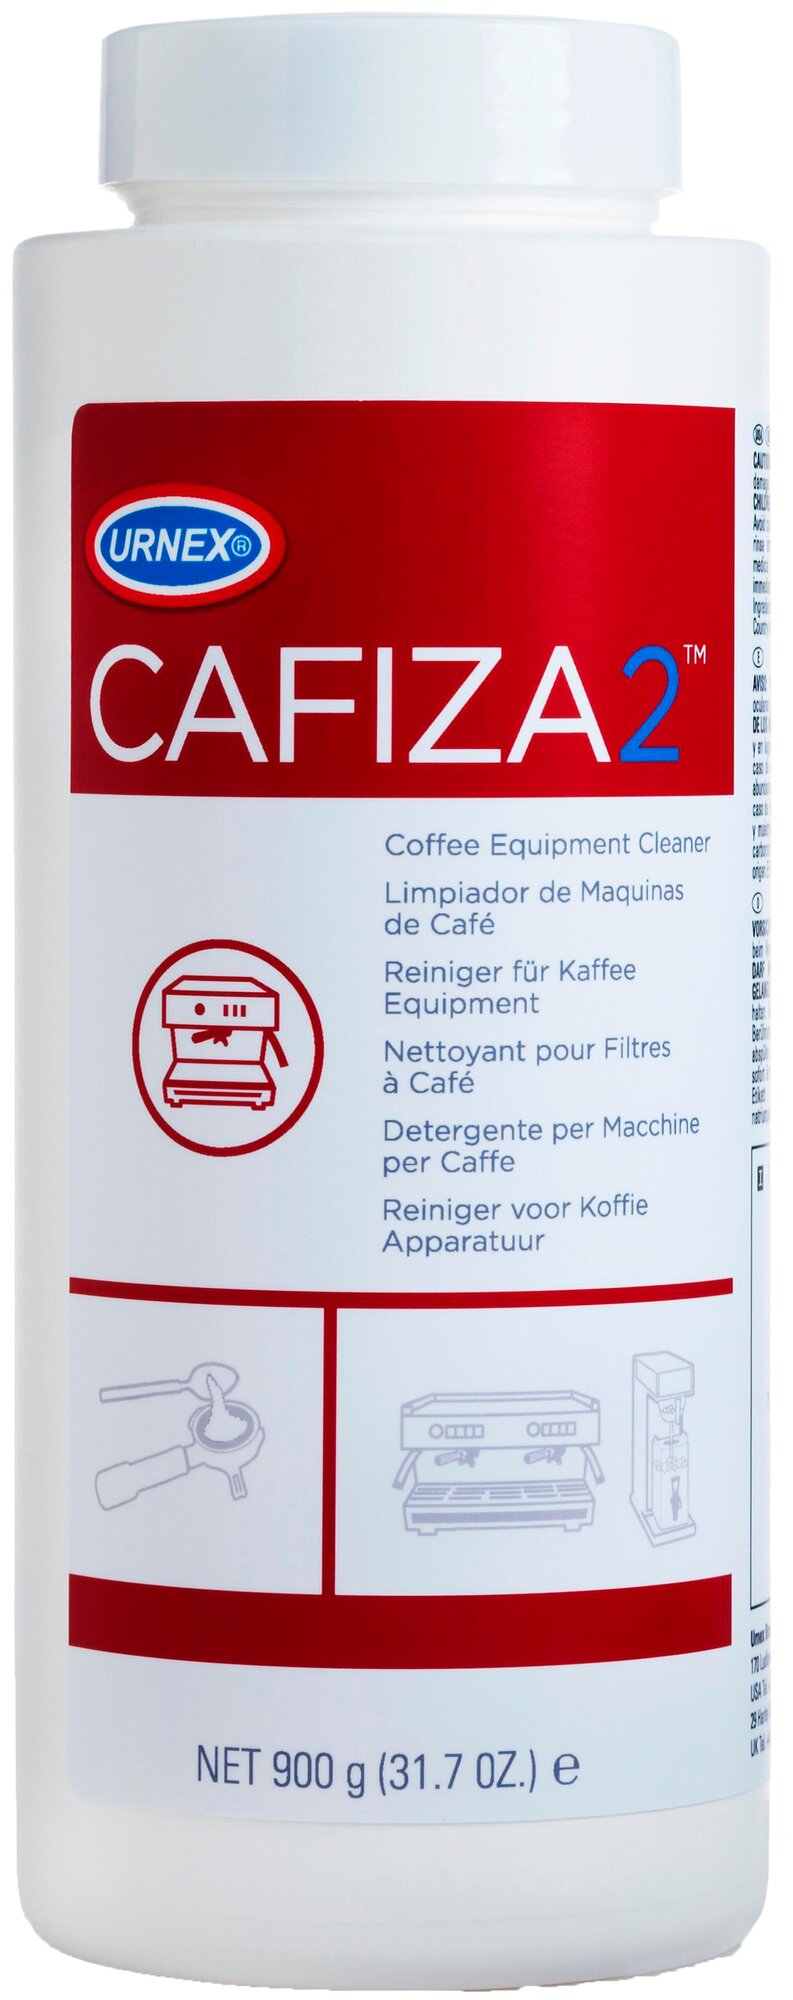 Cредство чистящее Urnex Cafiza2 (для эспрессо-машин)